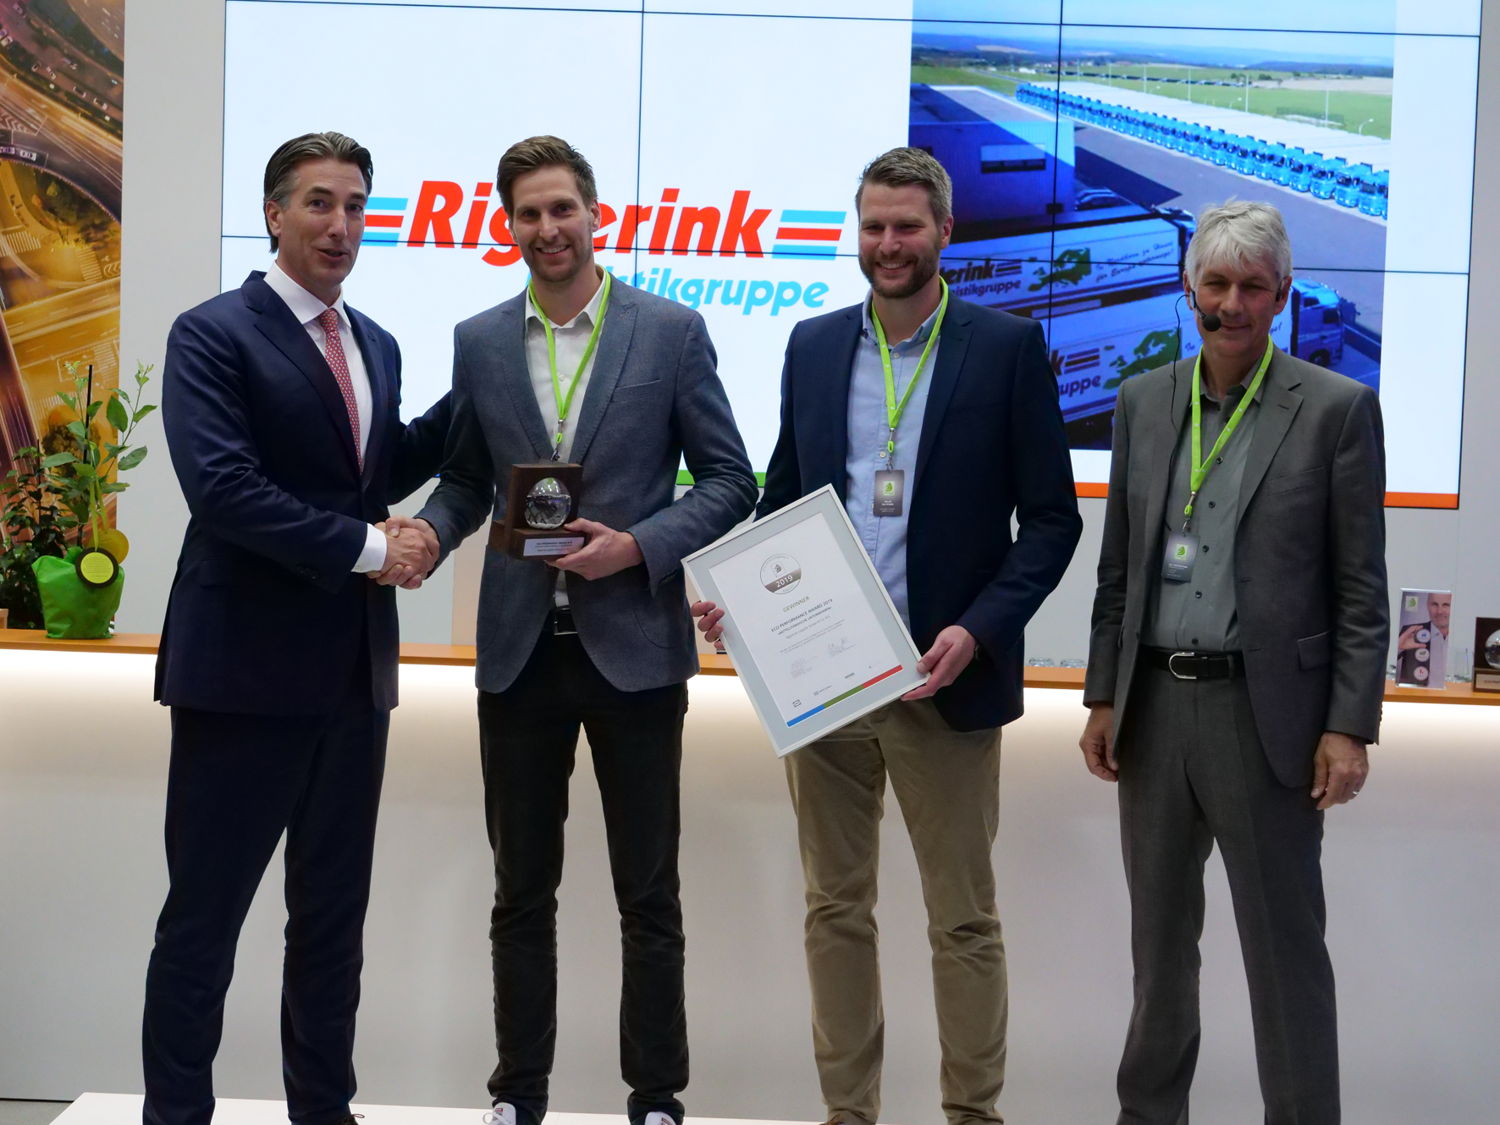 Arne et Helge Rigterink (2e et 3e depuis la gauche), le directeur de DKV Marco van Kalleveen (à gauche) et le président du jury de l’EPA Wolfgang Stölzle (à droite) sont heureux  d’avoir remporté l‘Eco Performance Award dans la catégorie des Entreprises moyennes. (Photo : DKV)